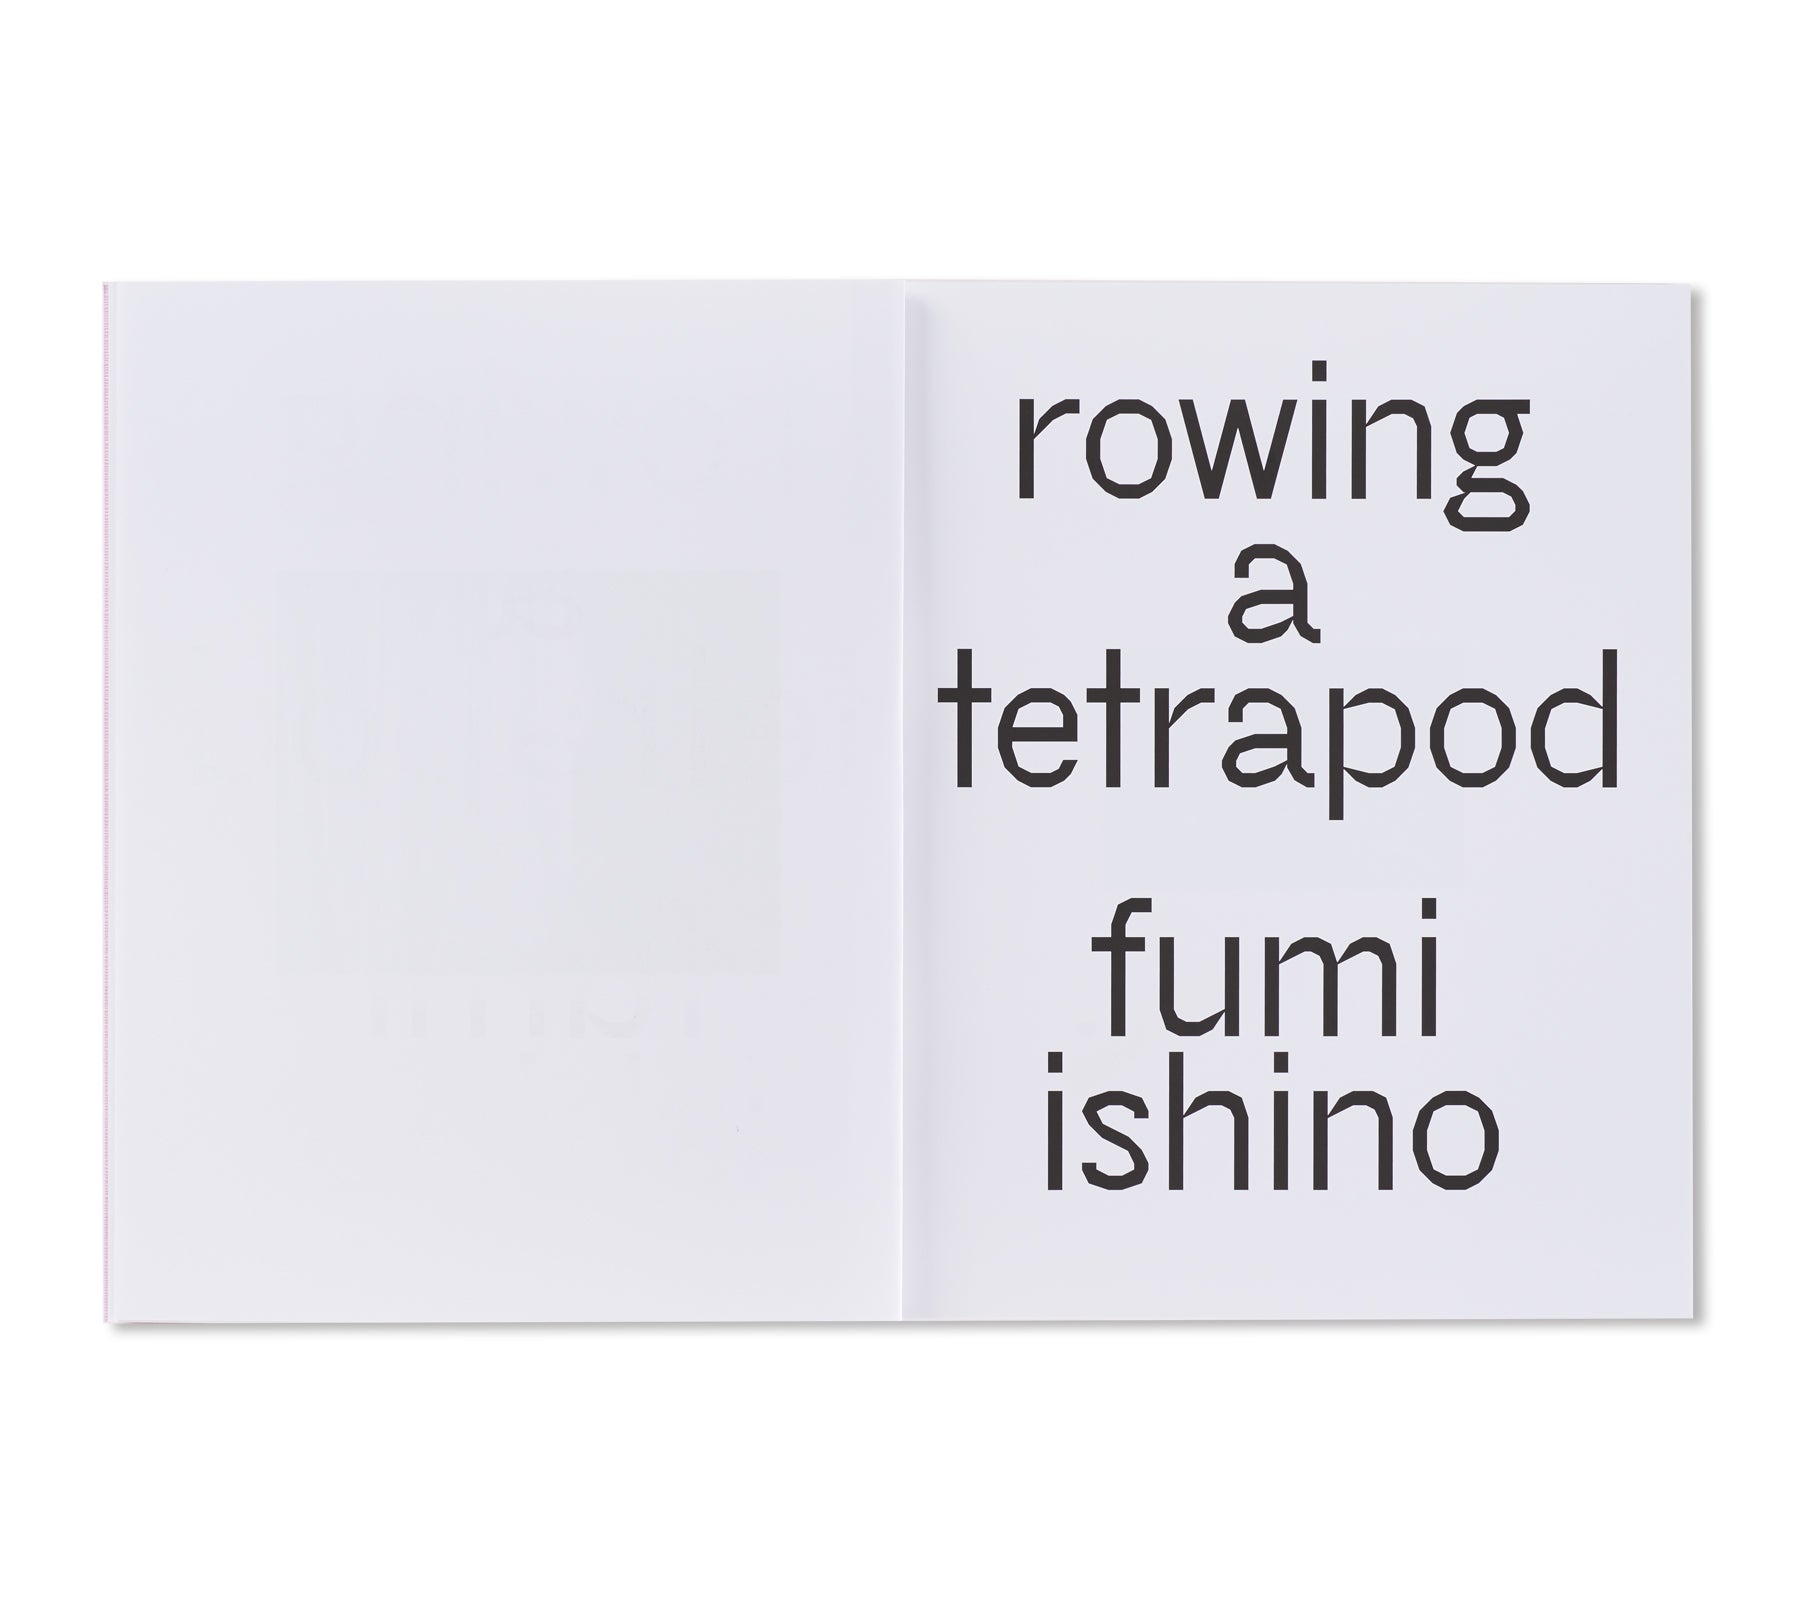 ROWING A TETRAPOD by Fumi Ishino [SIGNED]